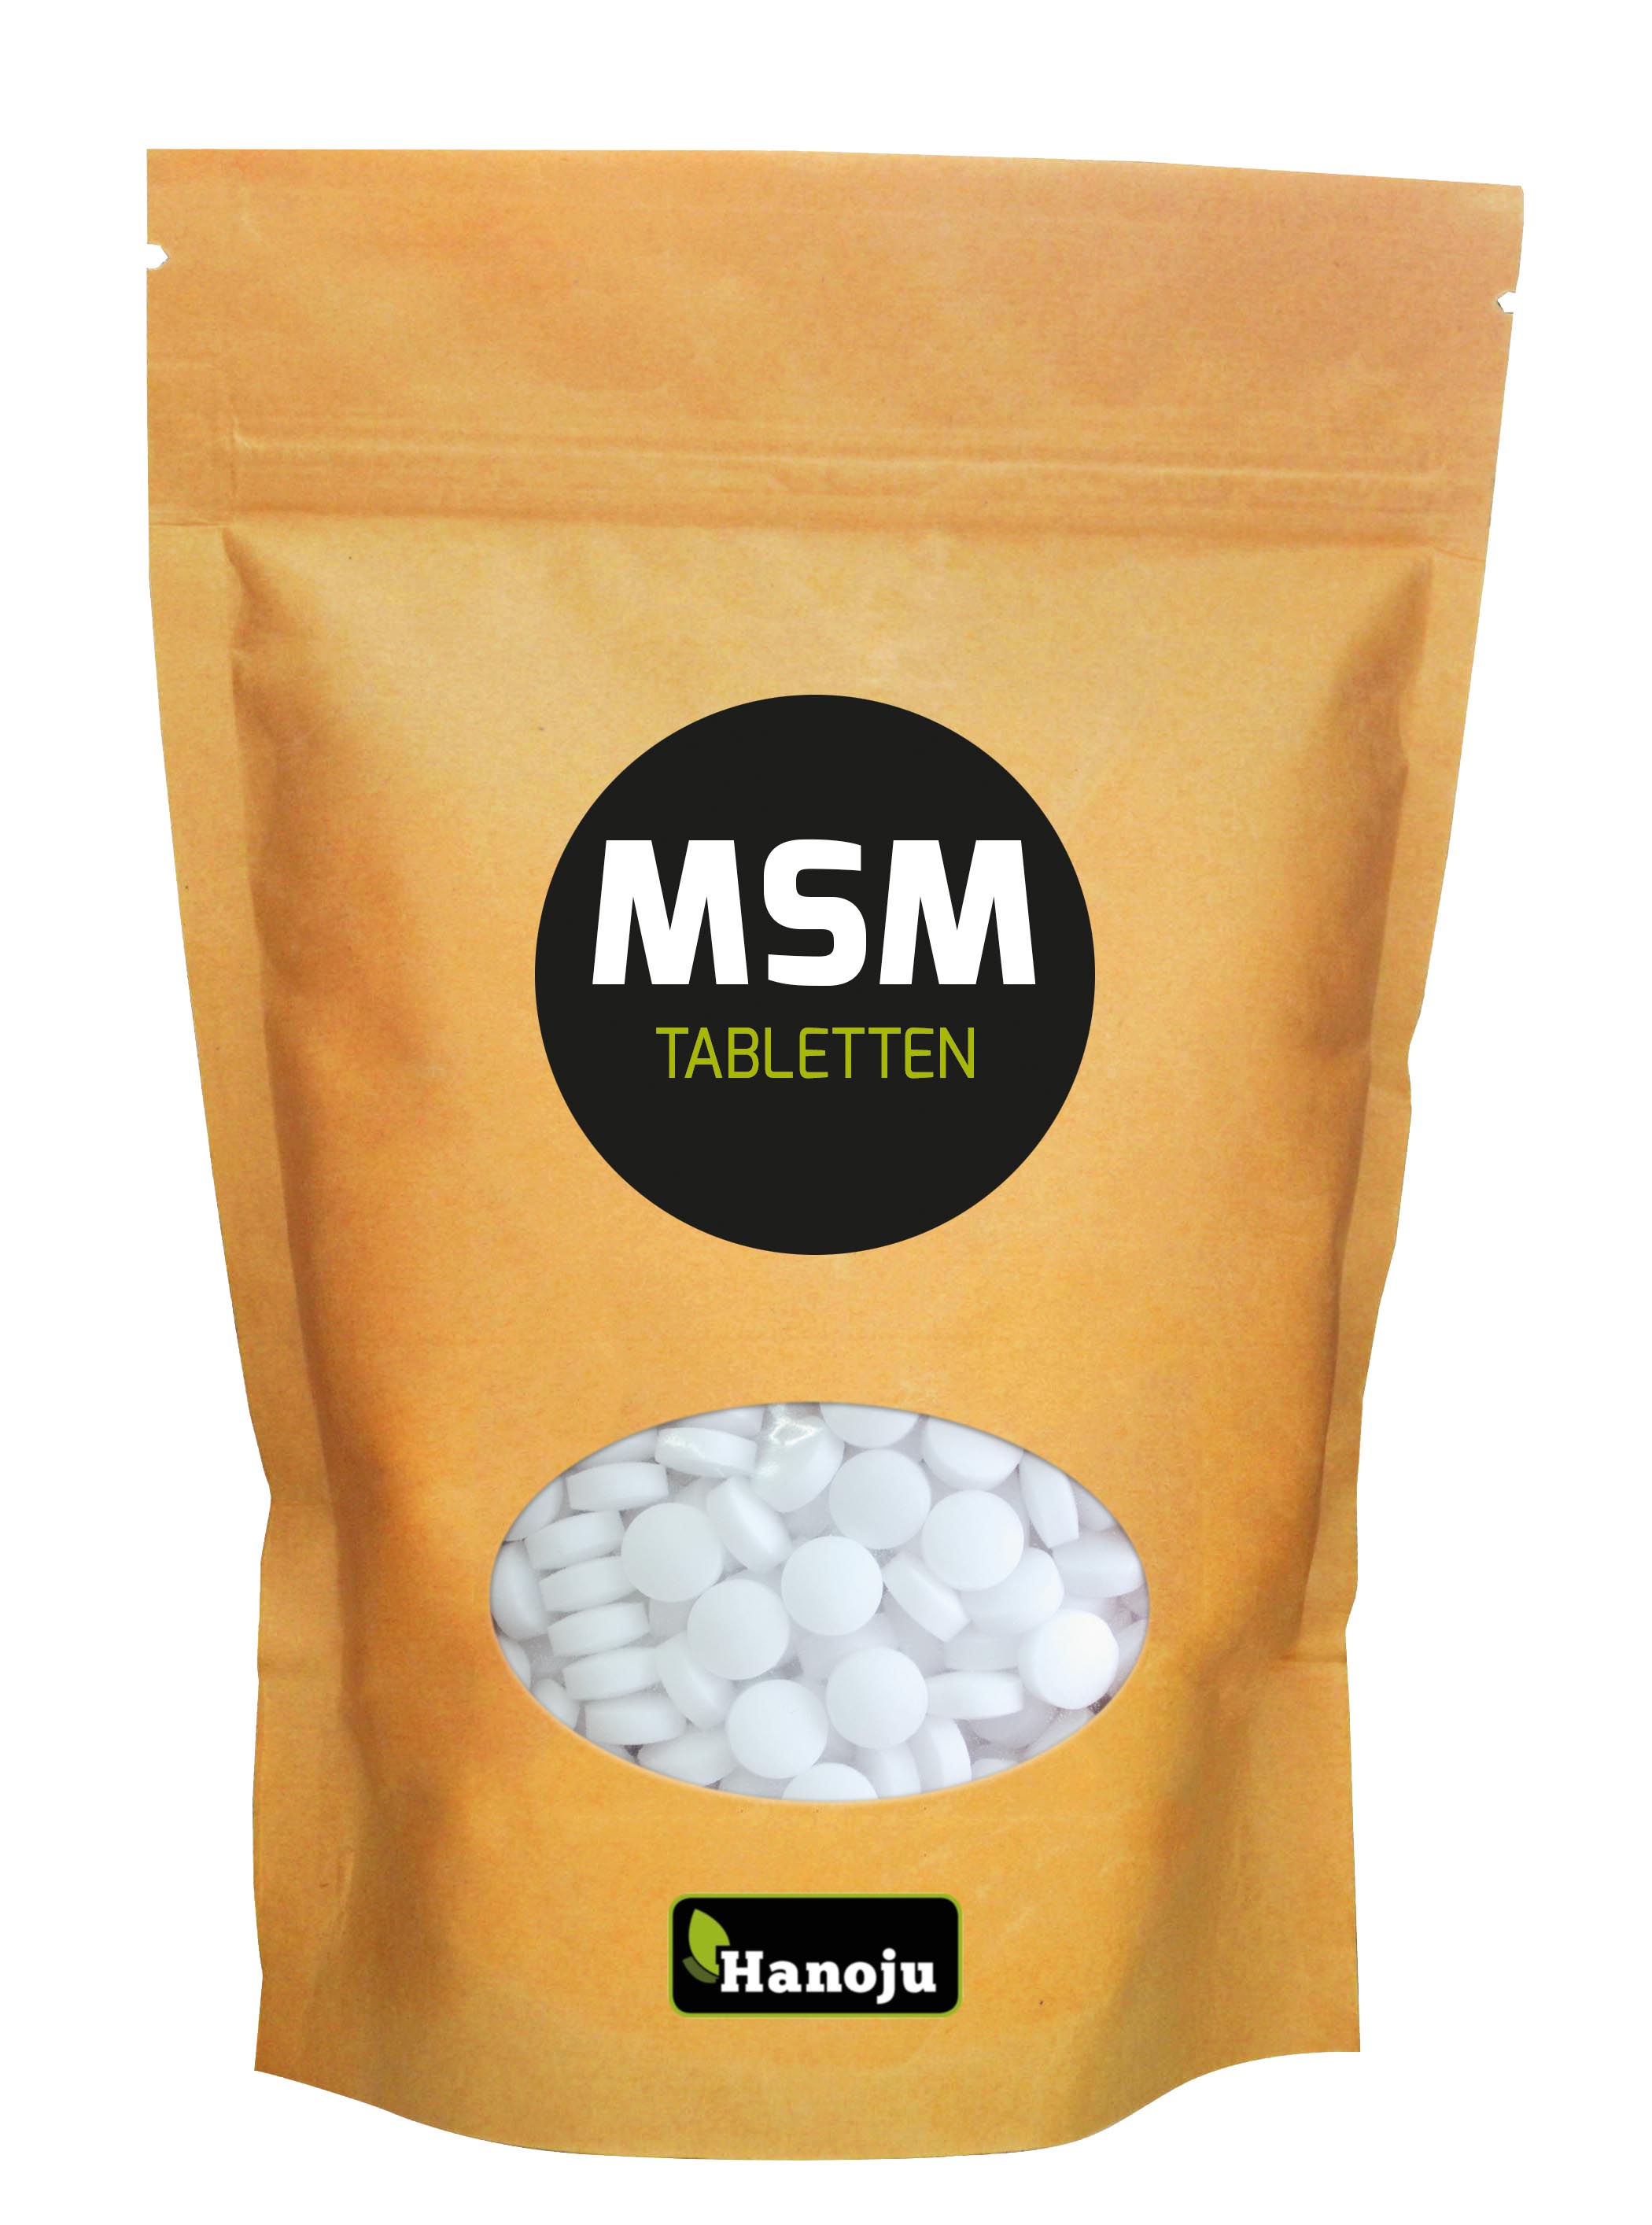 Hanoju MSM Tabletten 750mg